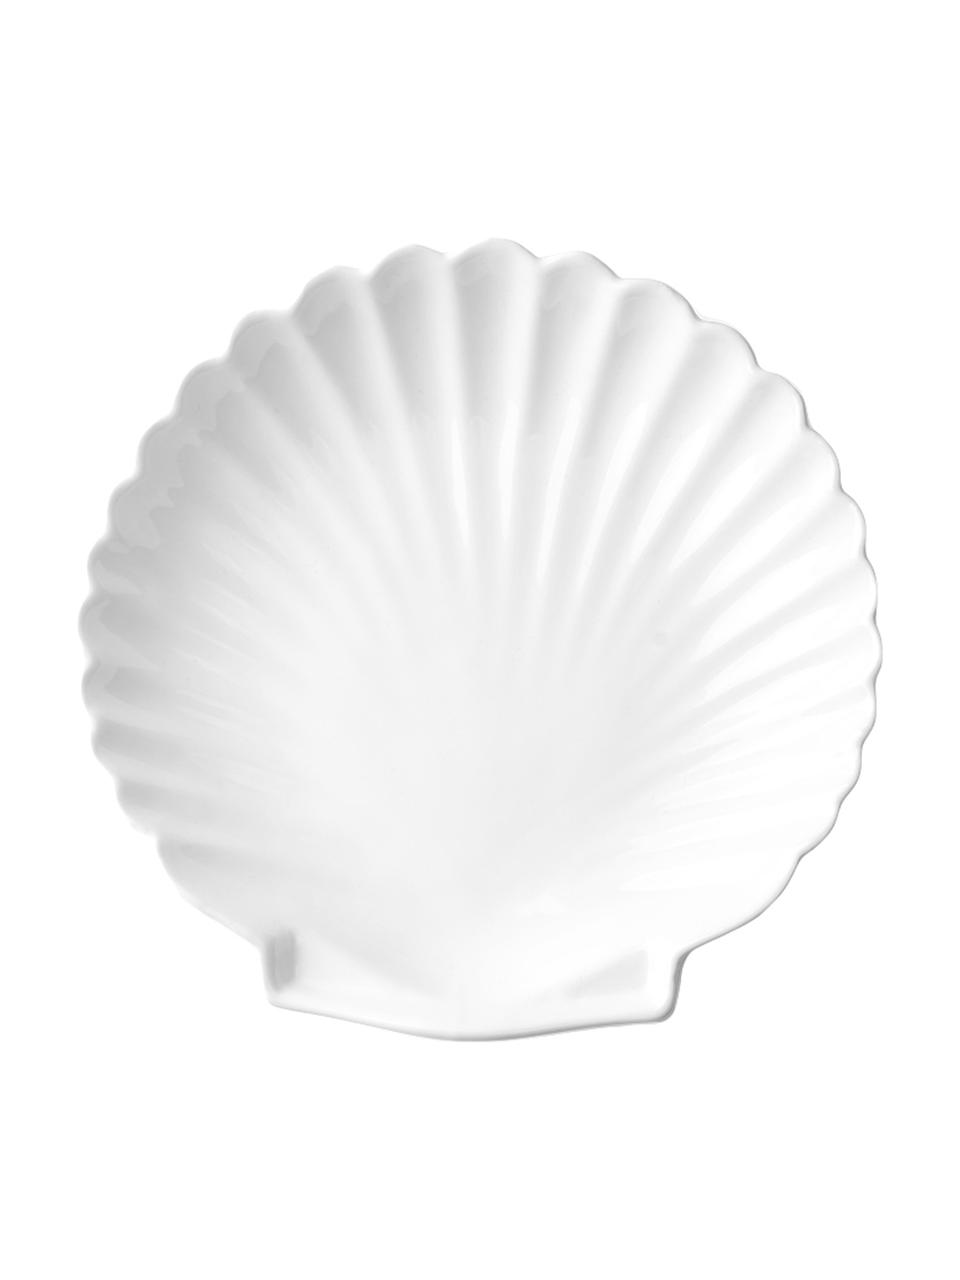 Teller Shell in Muschelform, 2 Stück, Keramik, Weiß, Ø 20 cm